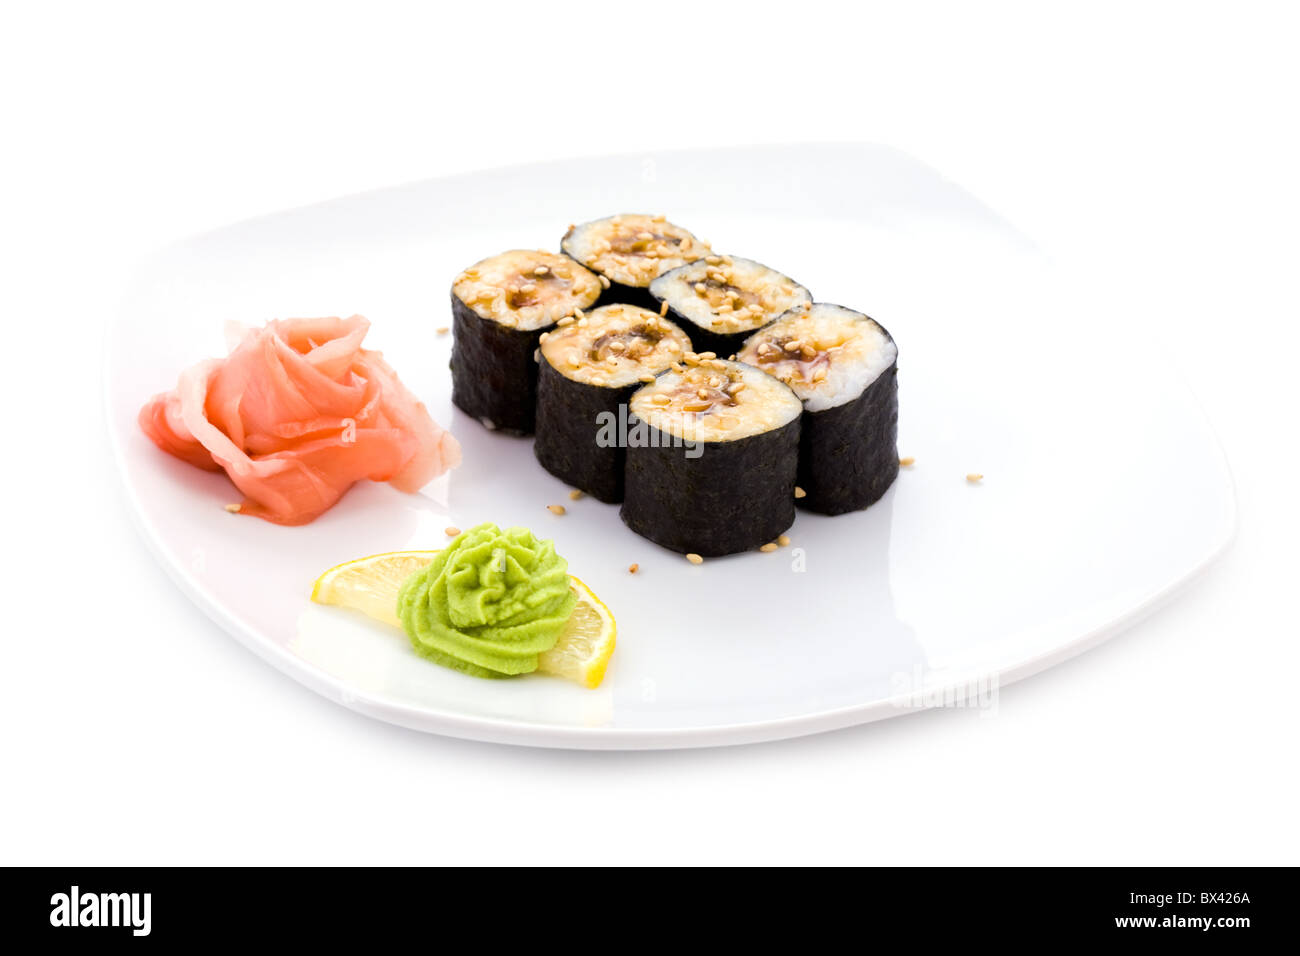 Immagine di unagi hosamaki sushi con semi di sesamo, la salsa di soia, decapati zenzero e wasabi su una piastra Foto Stock